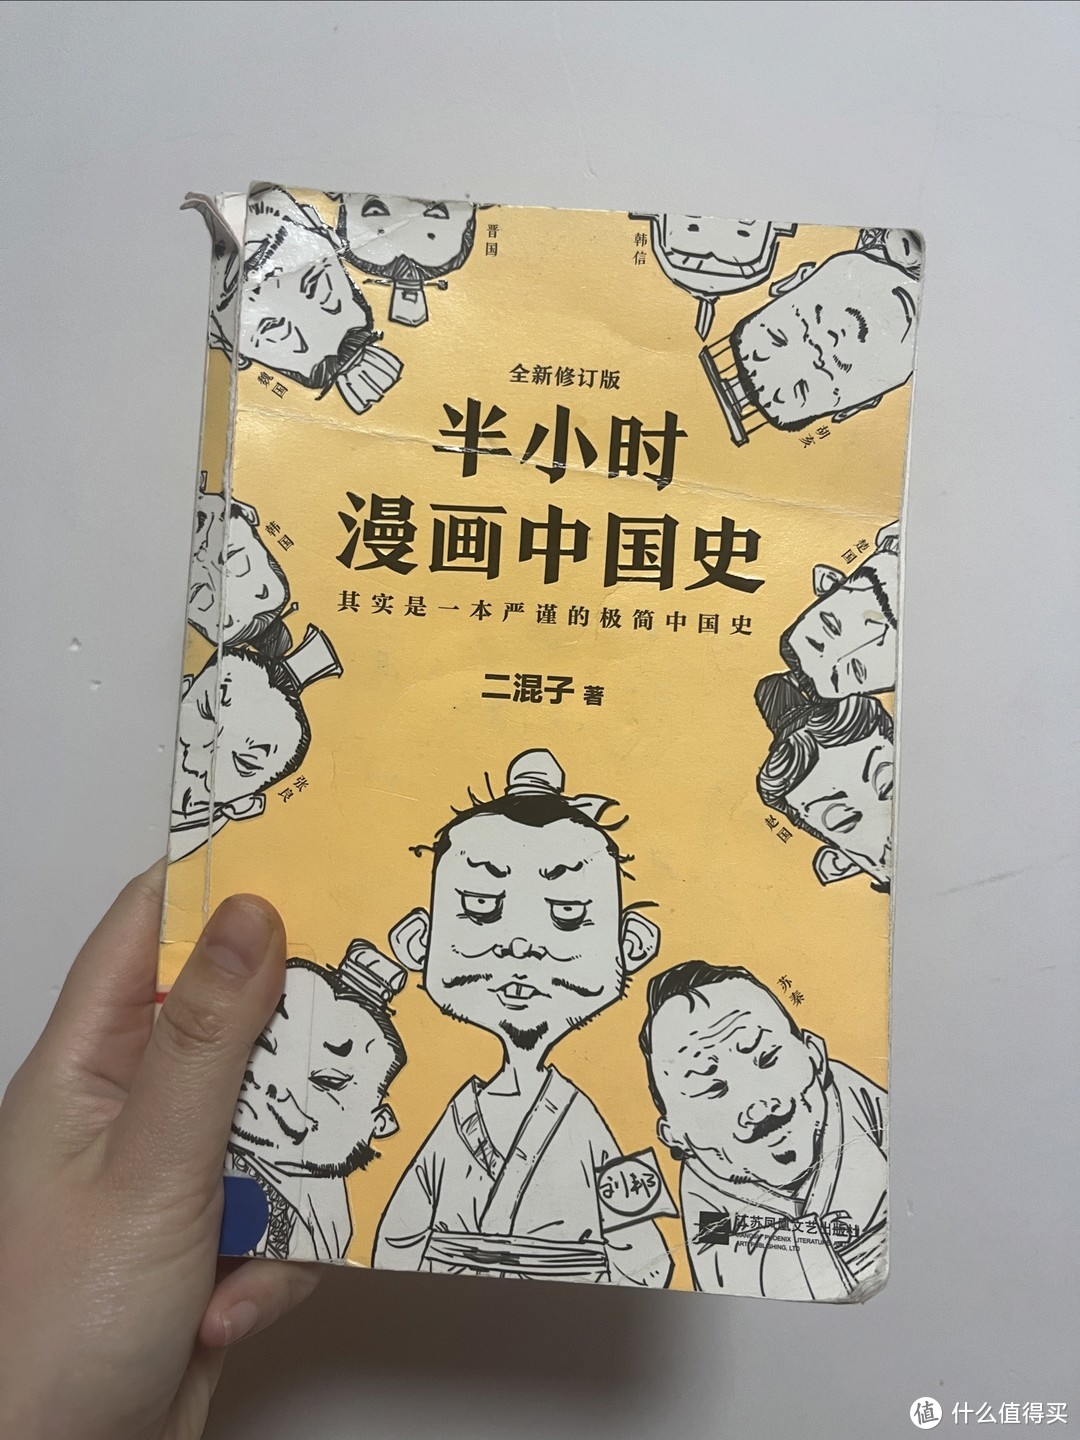 快速get历史知识，我推荐这本《半小时漫画中国史》！